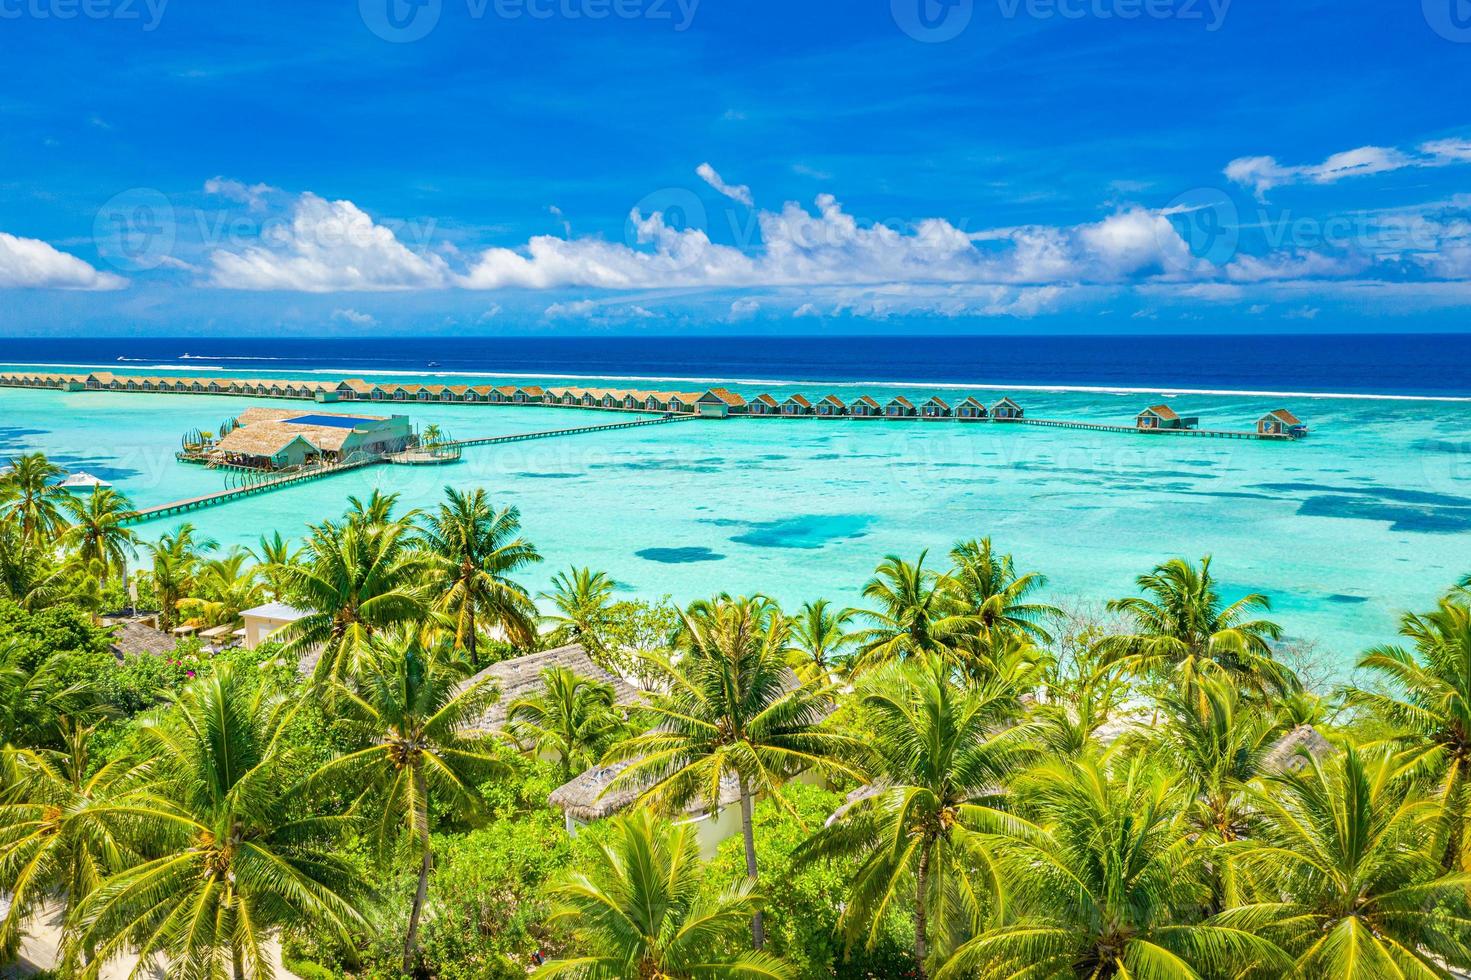 asombroso atolón e isla en maldivas desde vista aérea. tranquilo paisaje tropical y paisaje marino con palmeras en la playa de arena blanca, naturaleza pacífica en la isla de resort de lujo. estado de ánimo de vacaciones de verano foto